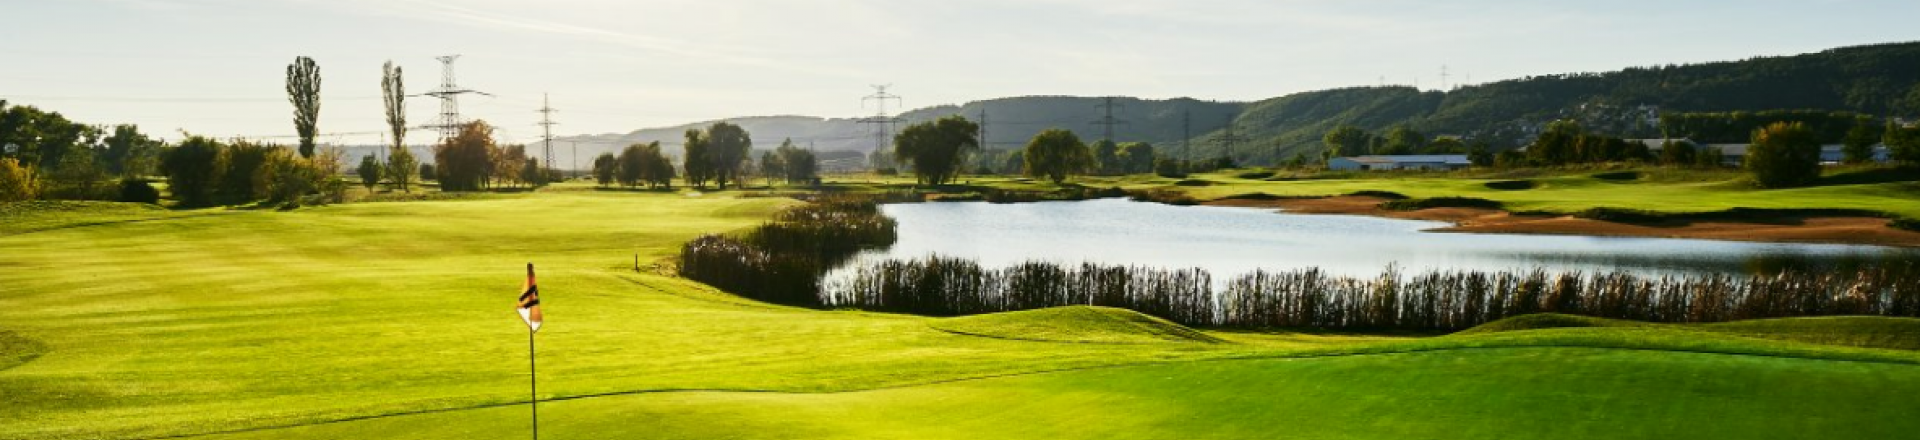 Prague City Golf Course